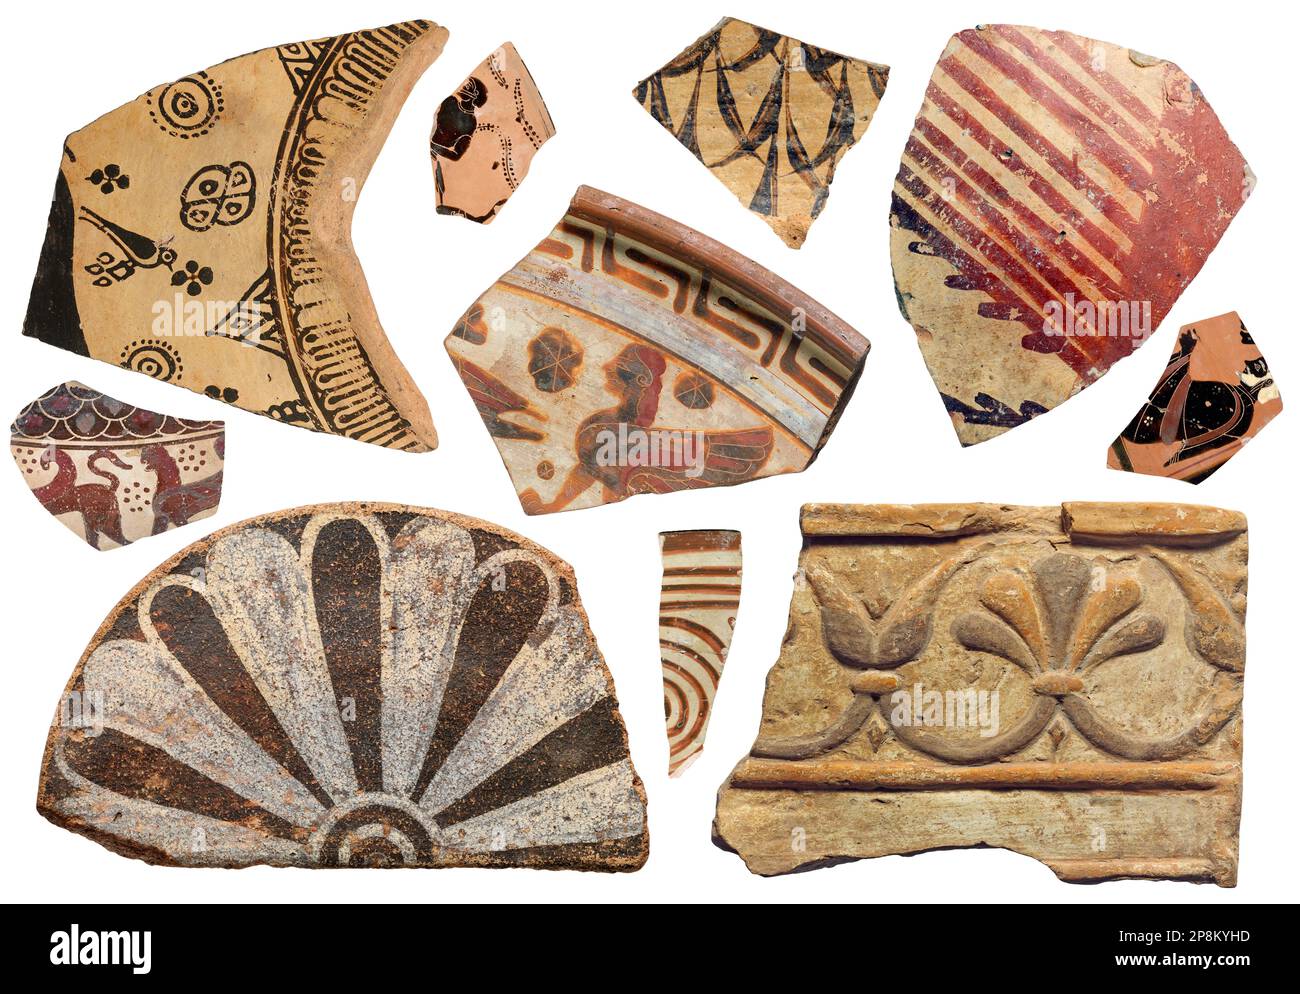 Antike Terrakotta-Fragmentsammlung, isolierte Keramikstücke aus alten griechischen und römischen Kulturen Stockfoto